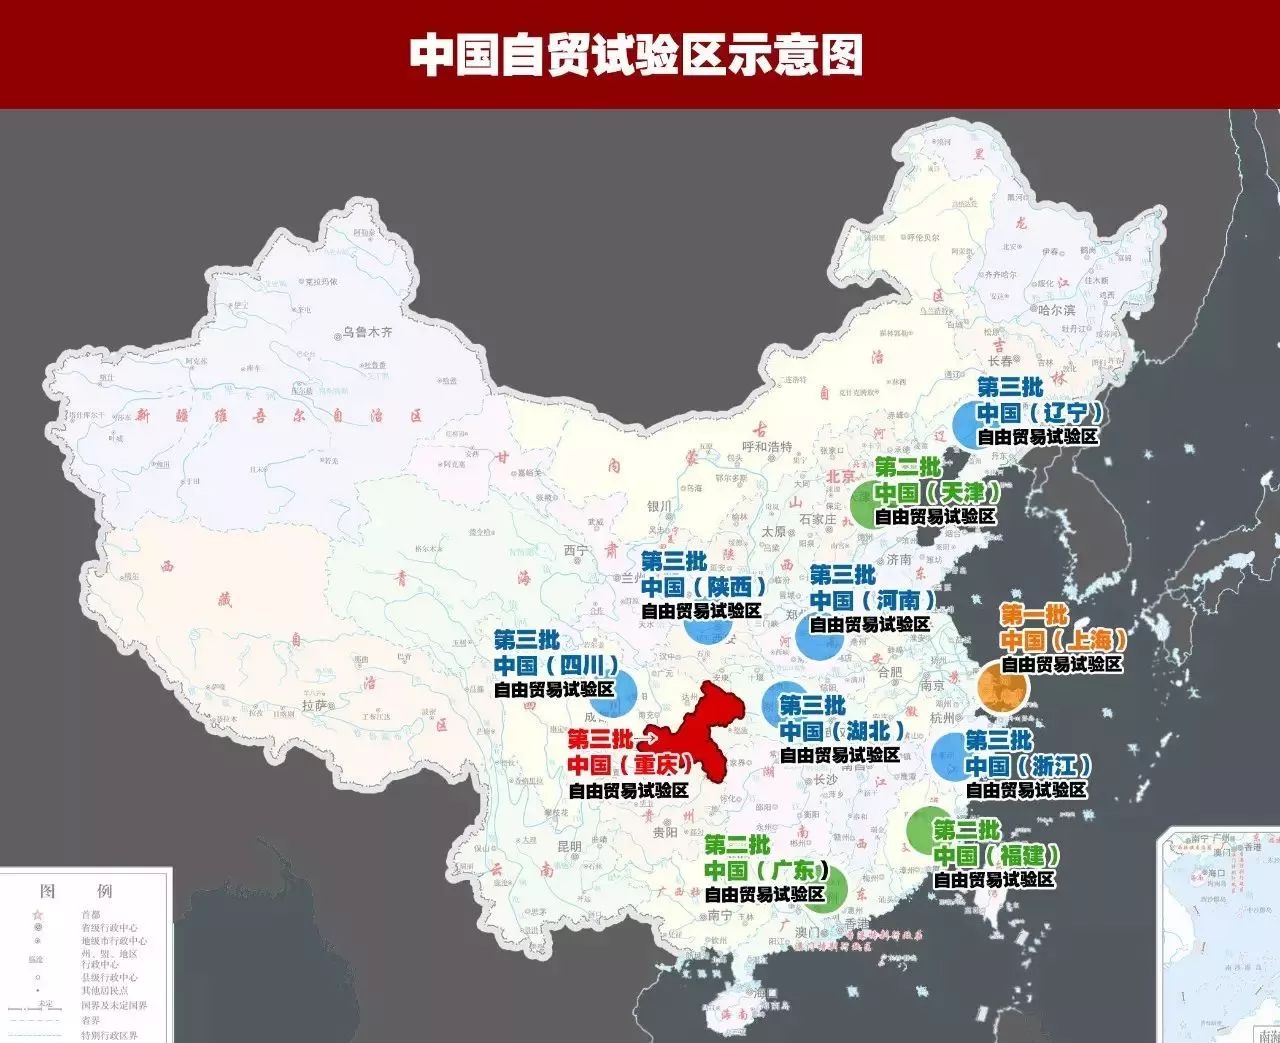 重庆自贸区金融创新获36条支持政策